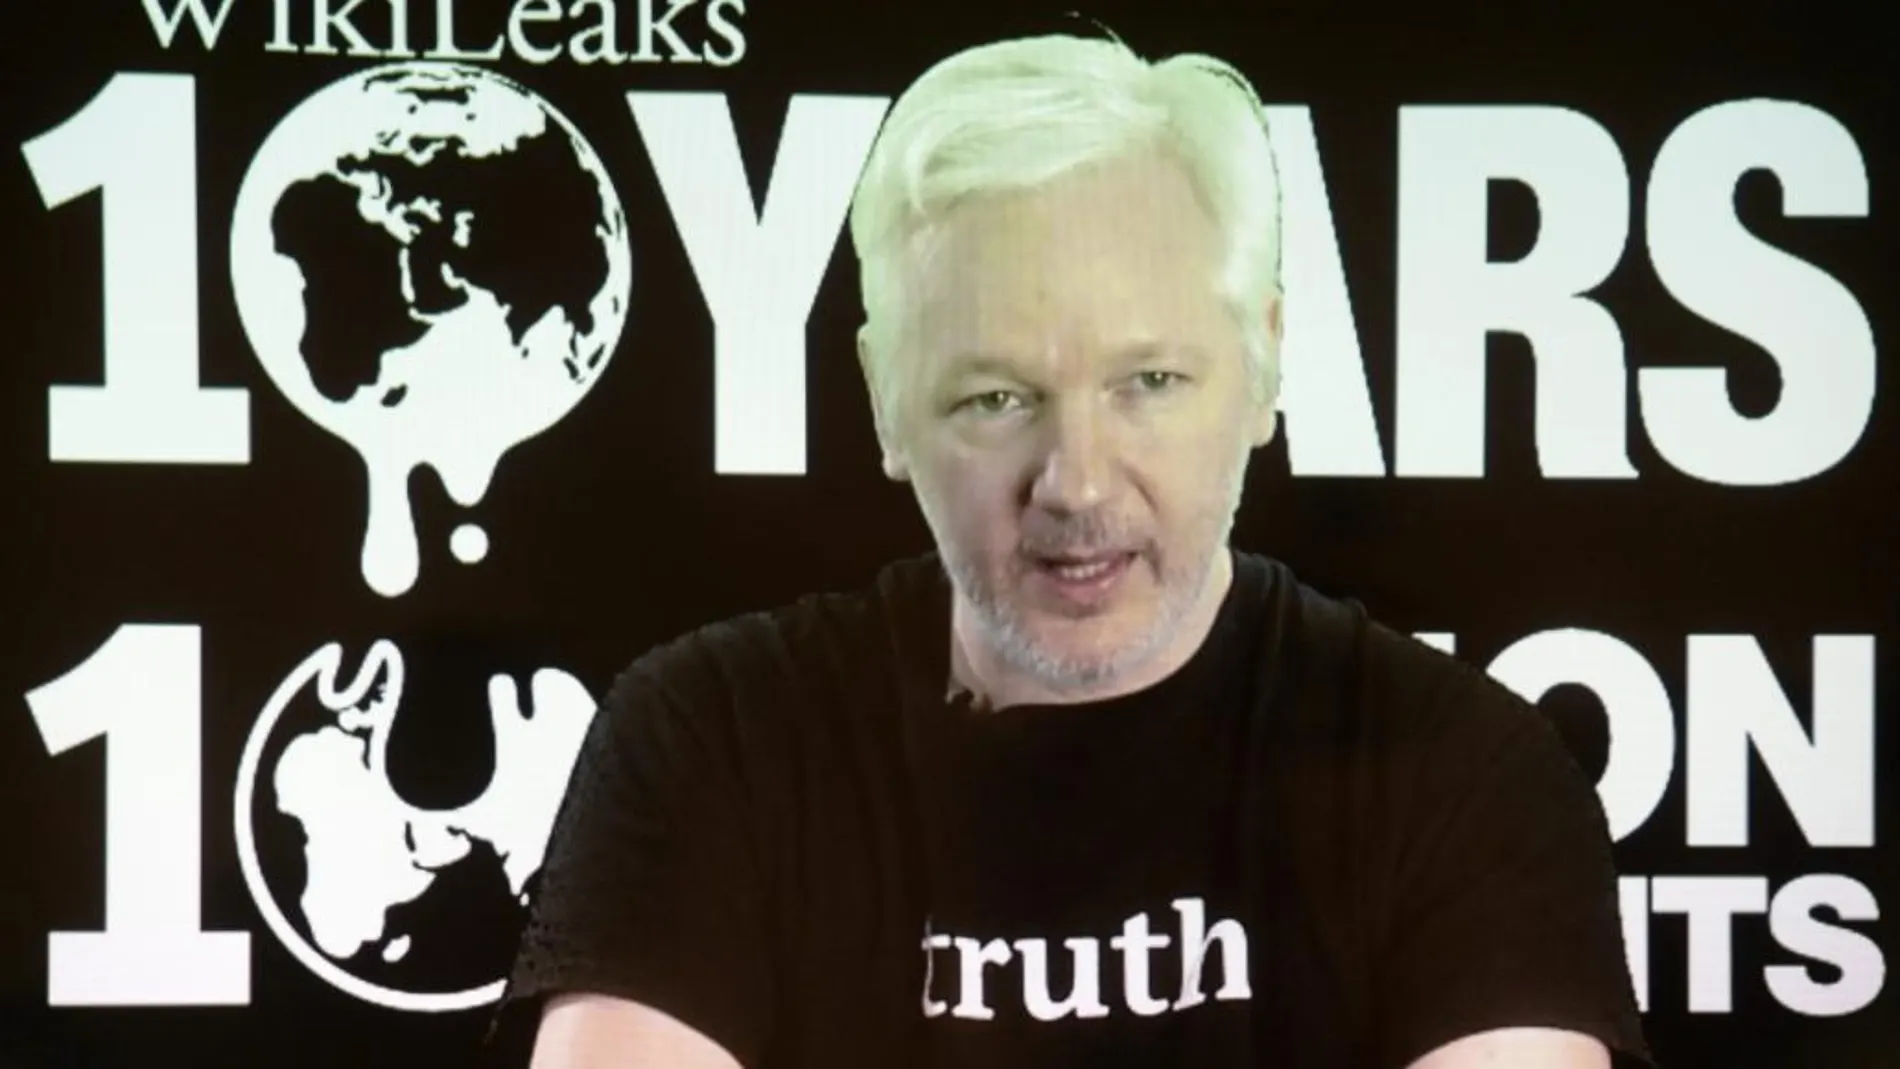 El líder y fundador de WikiLeaks, Julian Assange, durante una videoconferencia con motivo del décimo aniversario de su organización, en Berlín